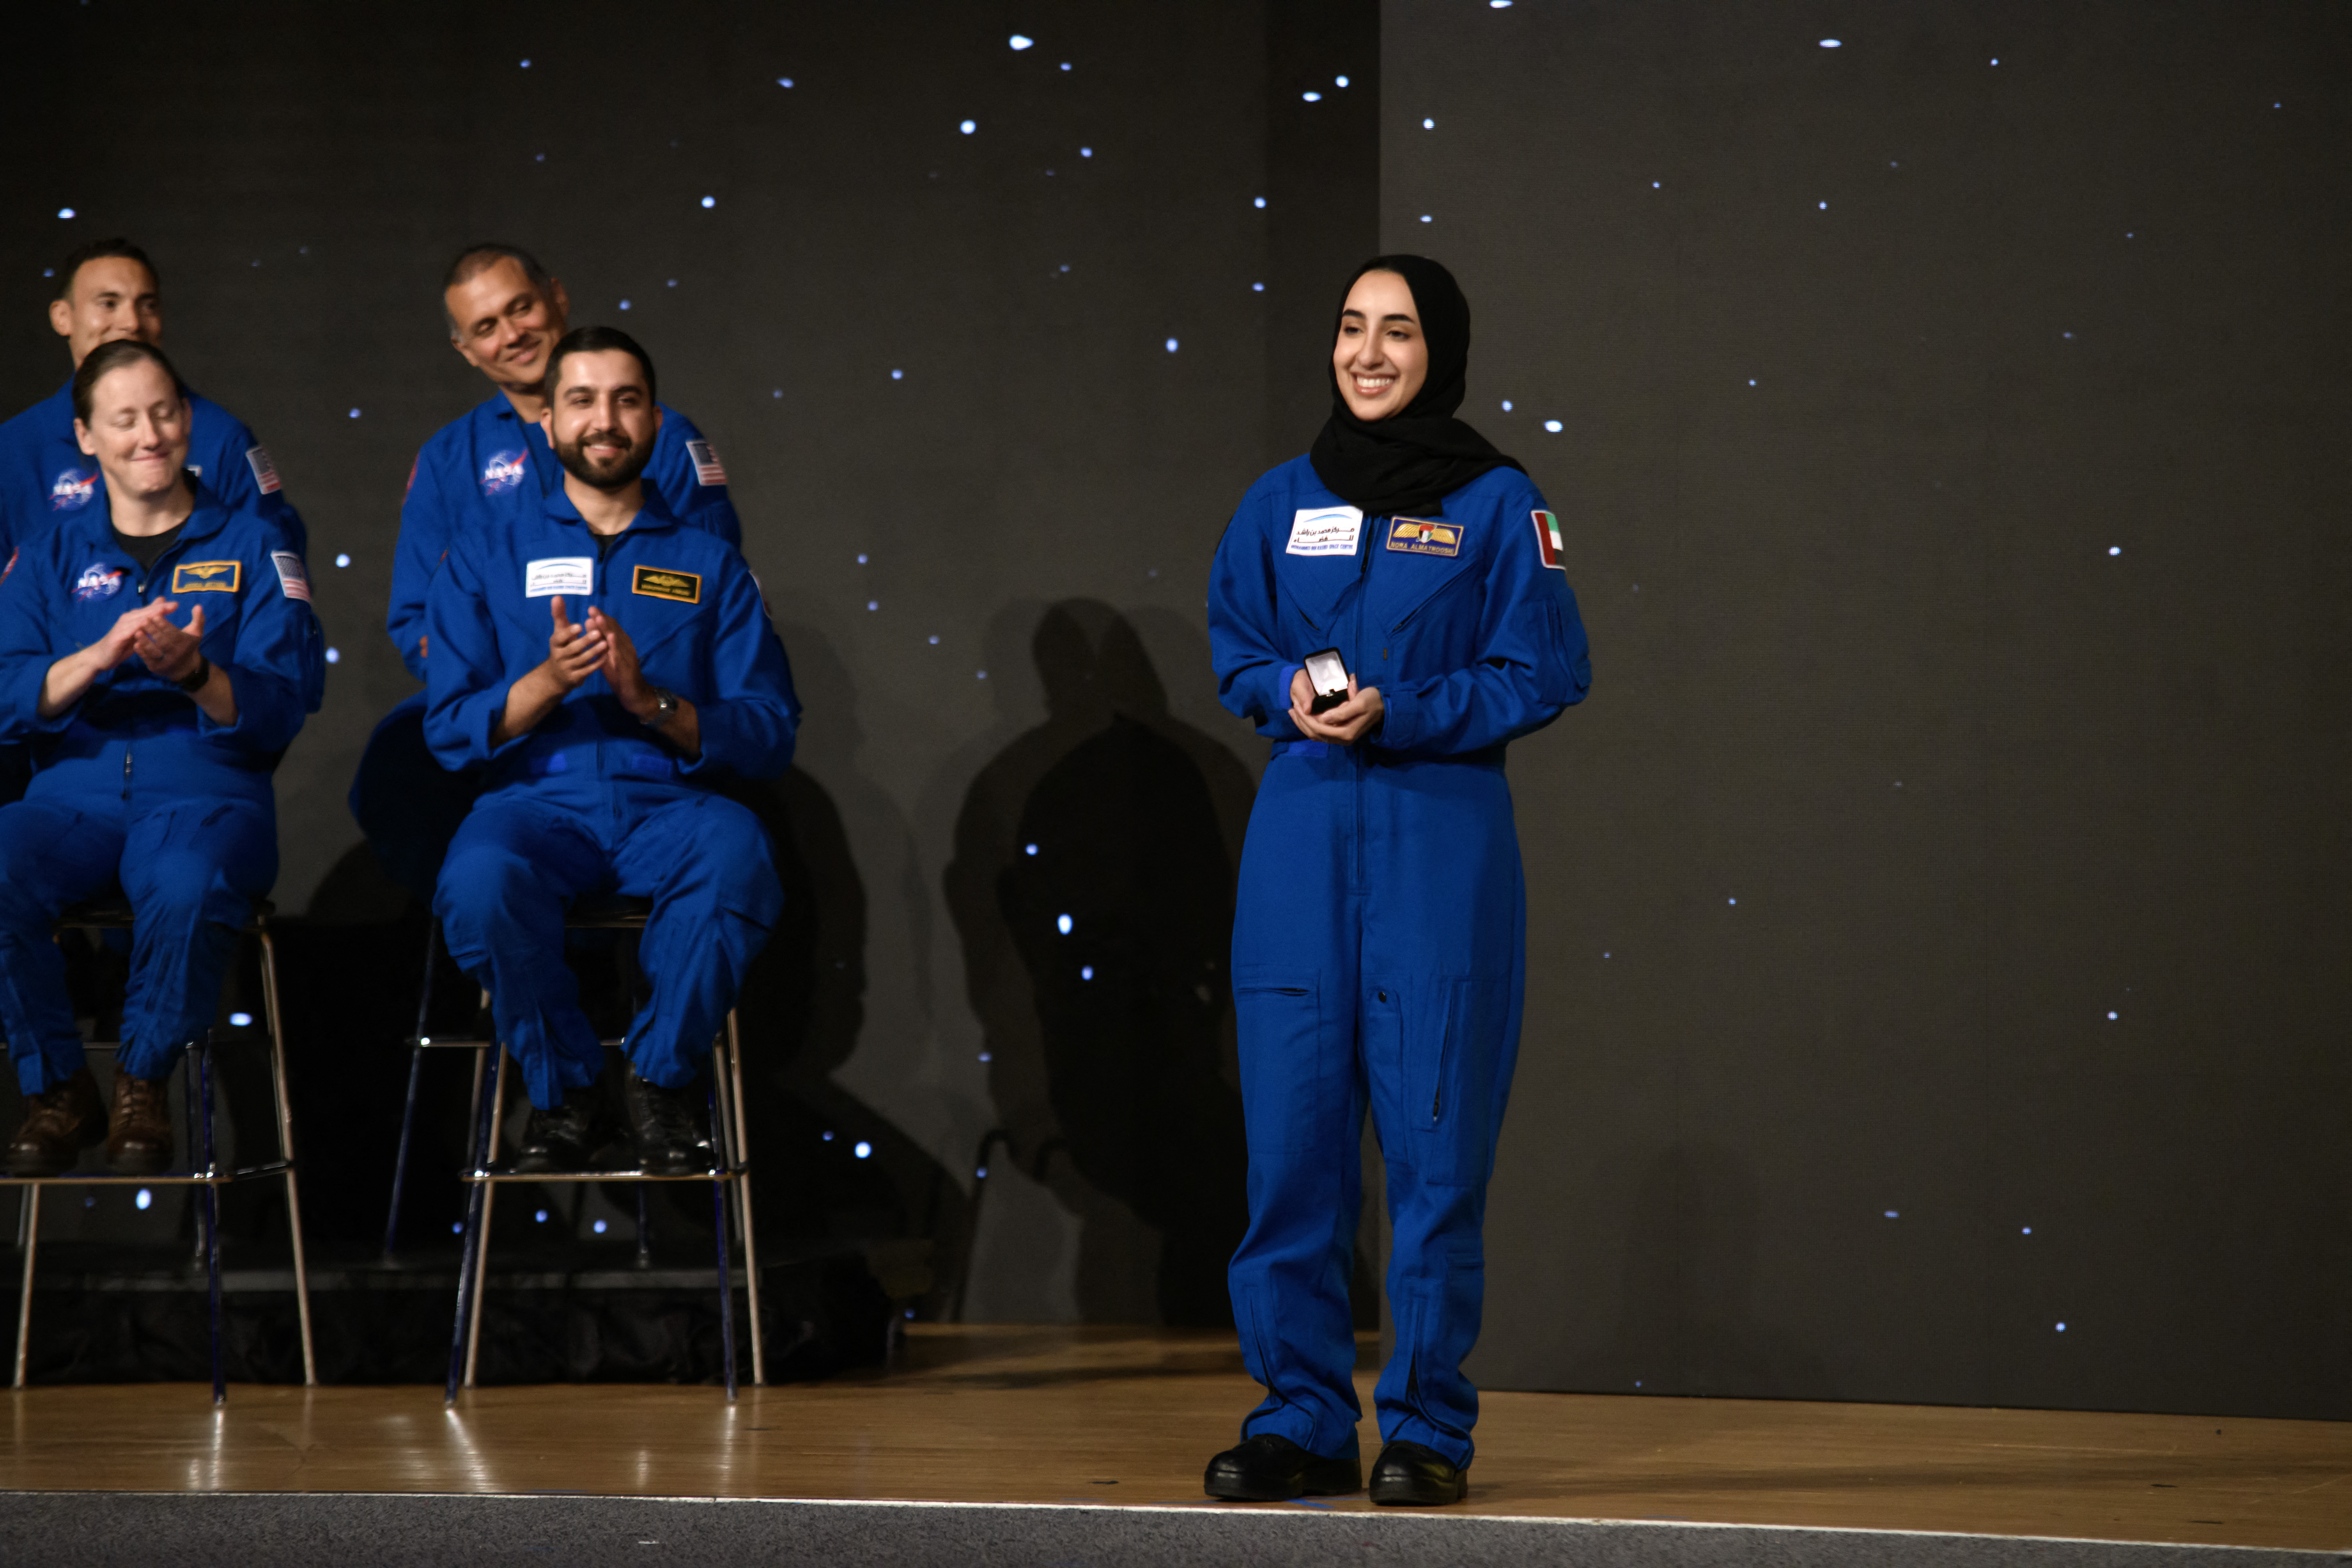 ناسا تبتكر حجابًا لأول عربية تنال شارة رواد الفضاء!